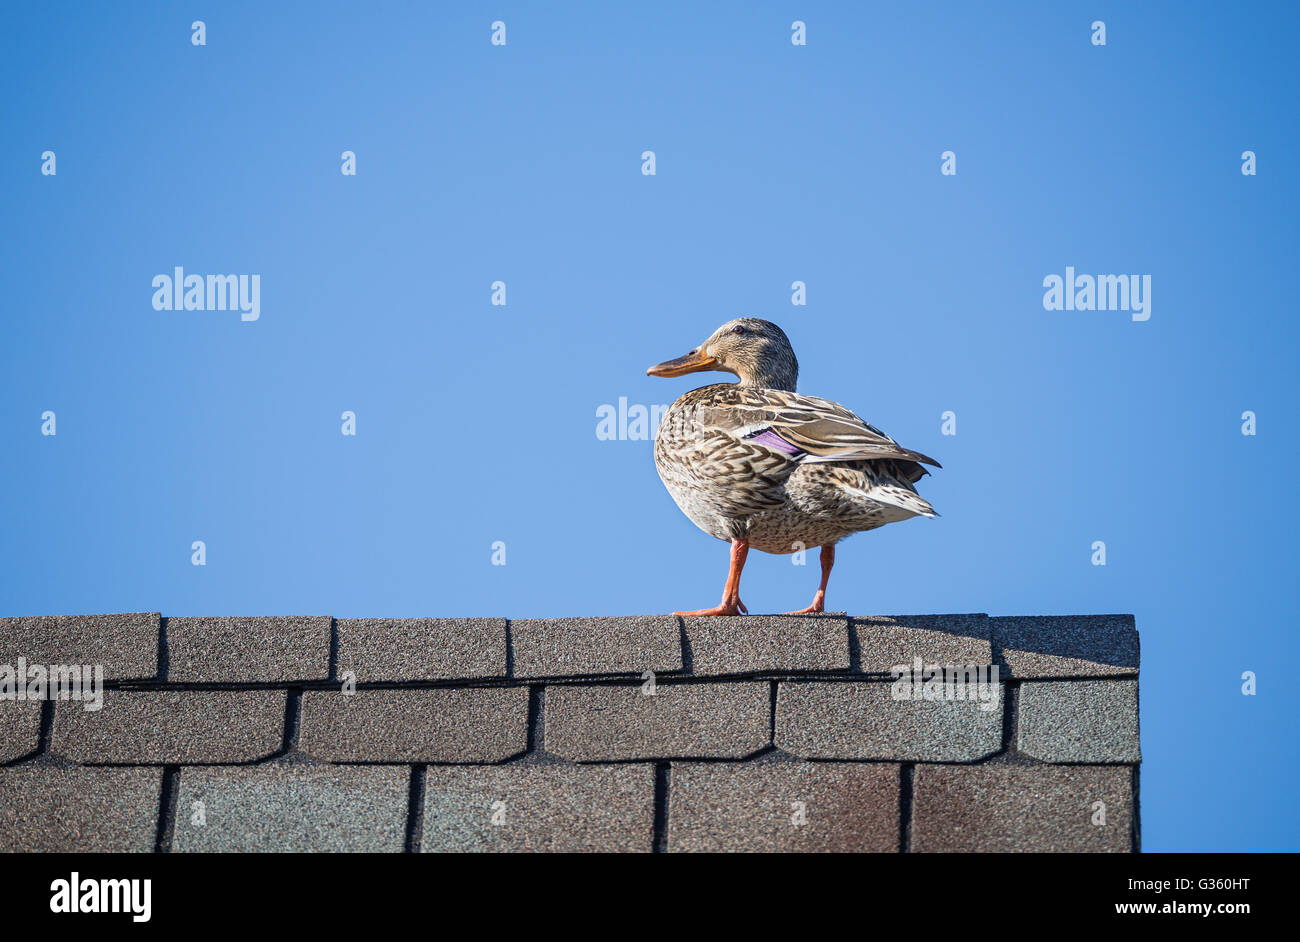 Weibliche Stockente (Anas Platyrhynchos) auf dem Dach gegen blauen Himmel Stockfoto